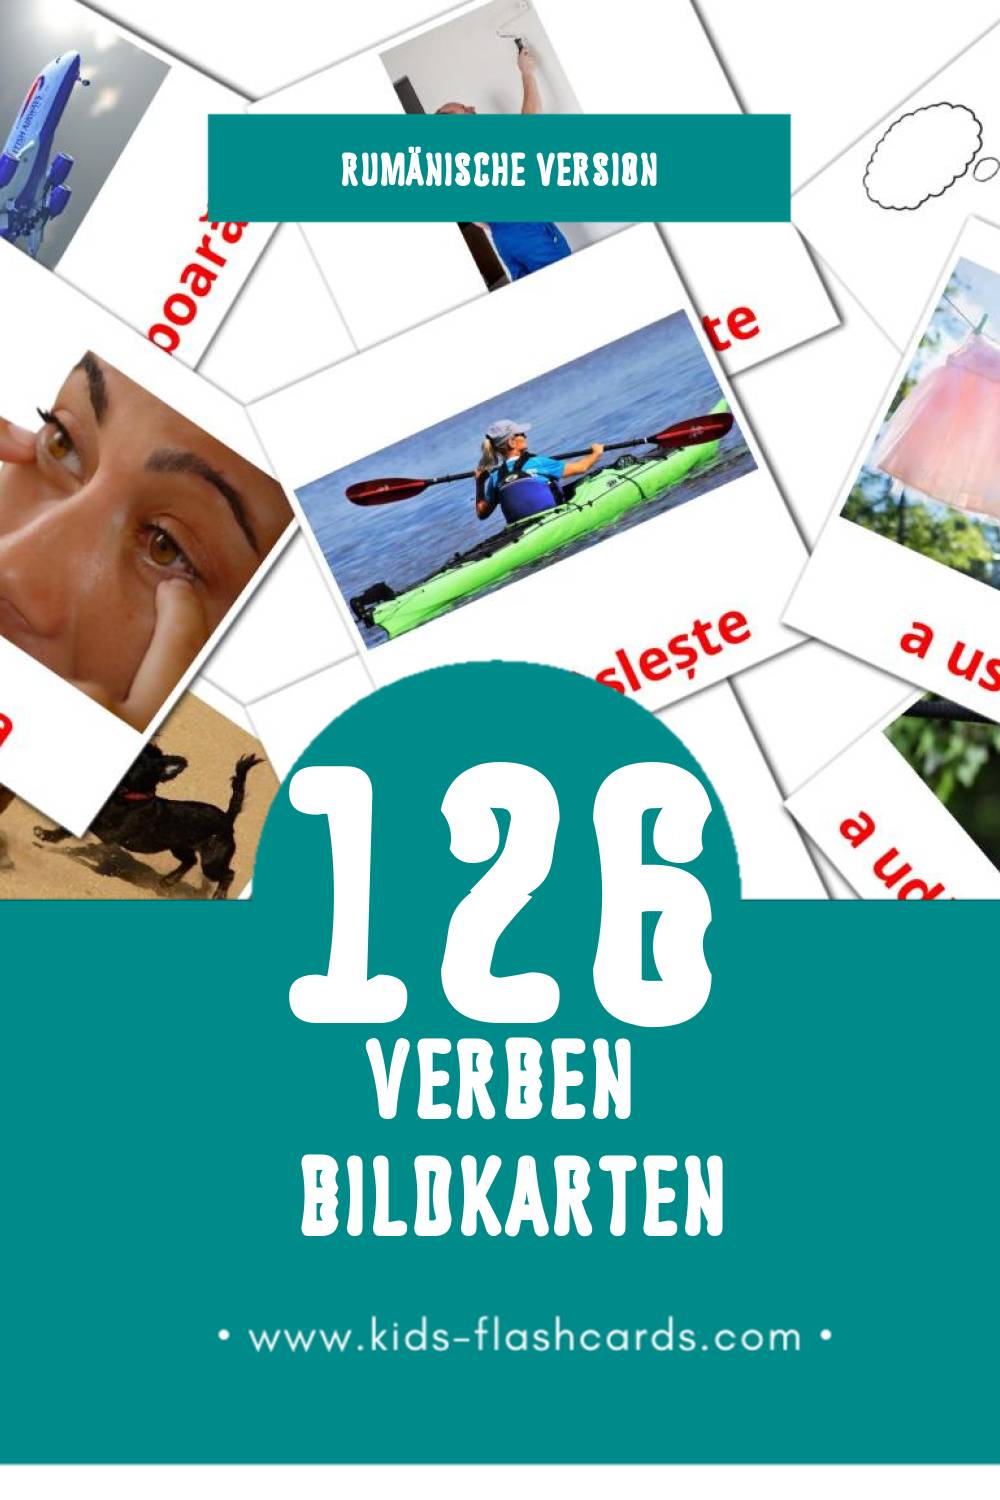 Visual Verbe  Flashcards für Kleinkinder (126 Karten in Rumänisch)